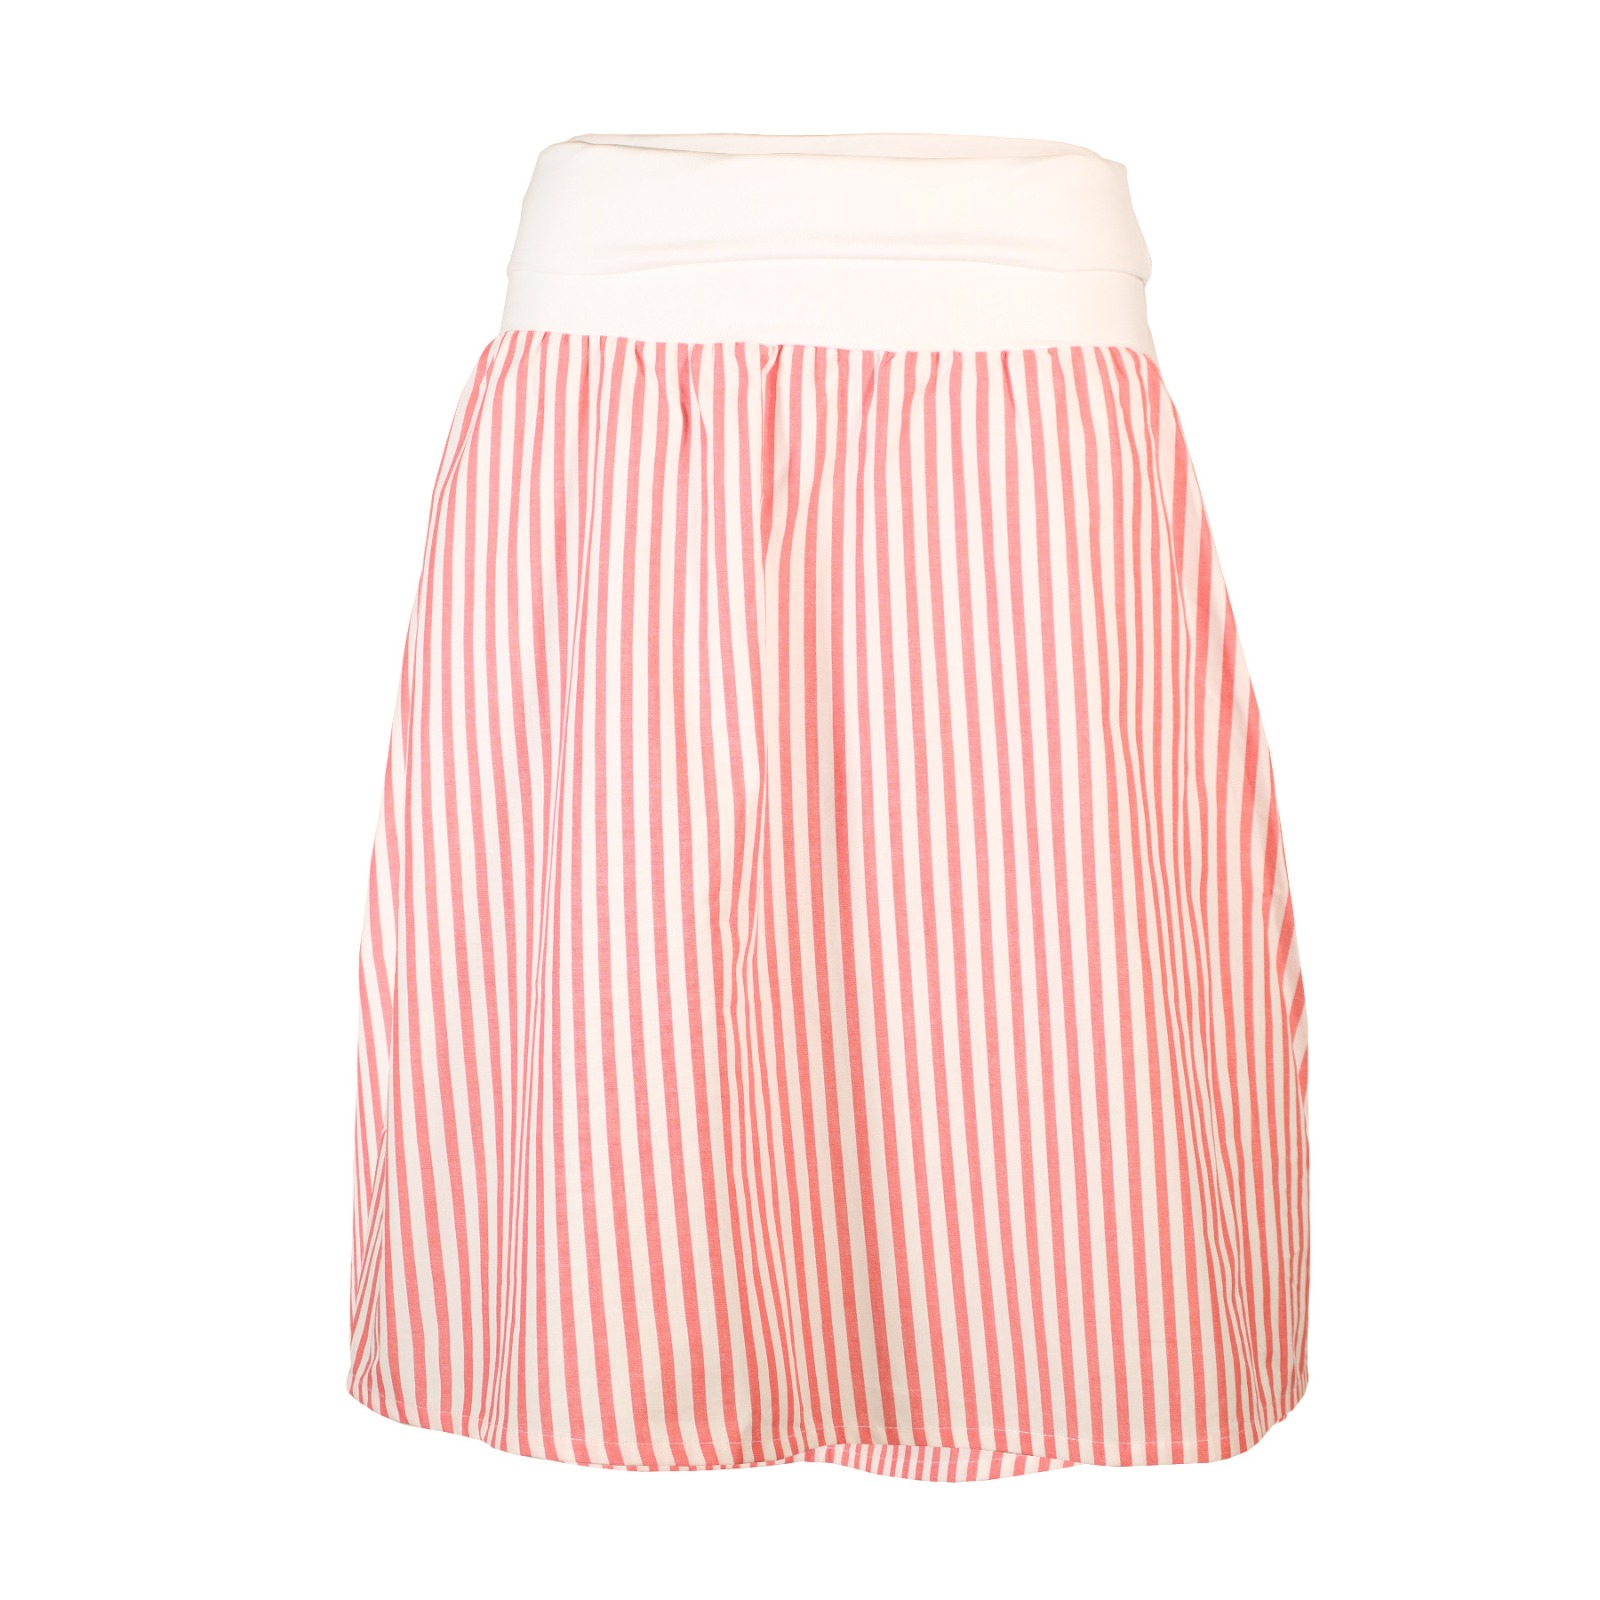 Organic skirt Freudian summer stripes red / white